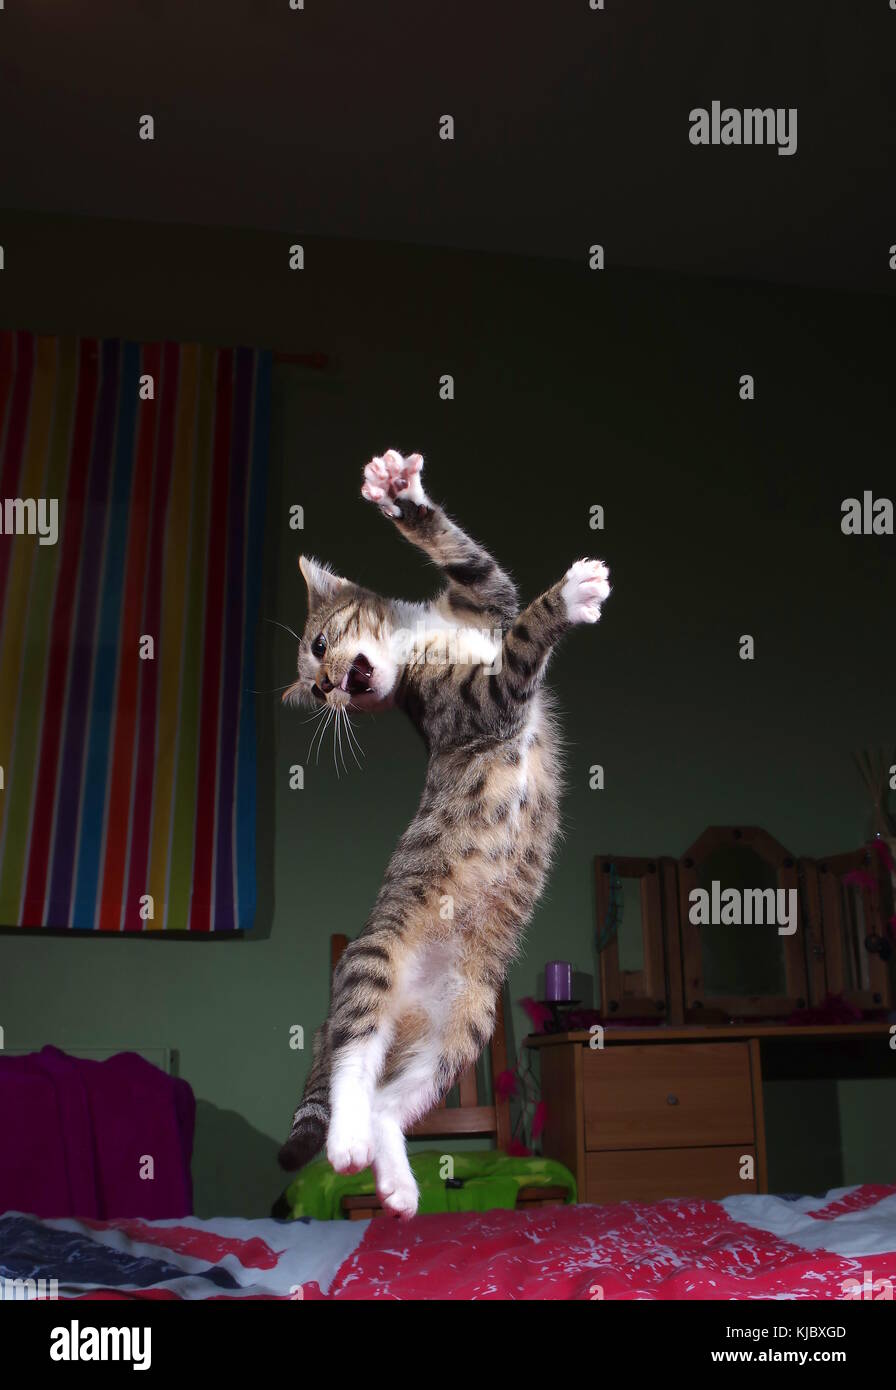 Tabby kitten jumping on bed Stock Photo